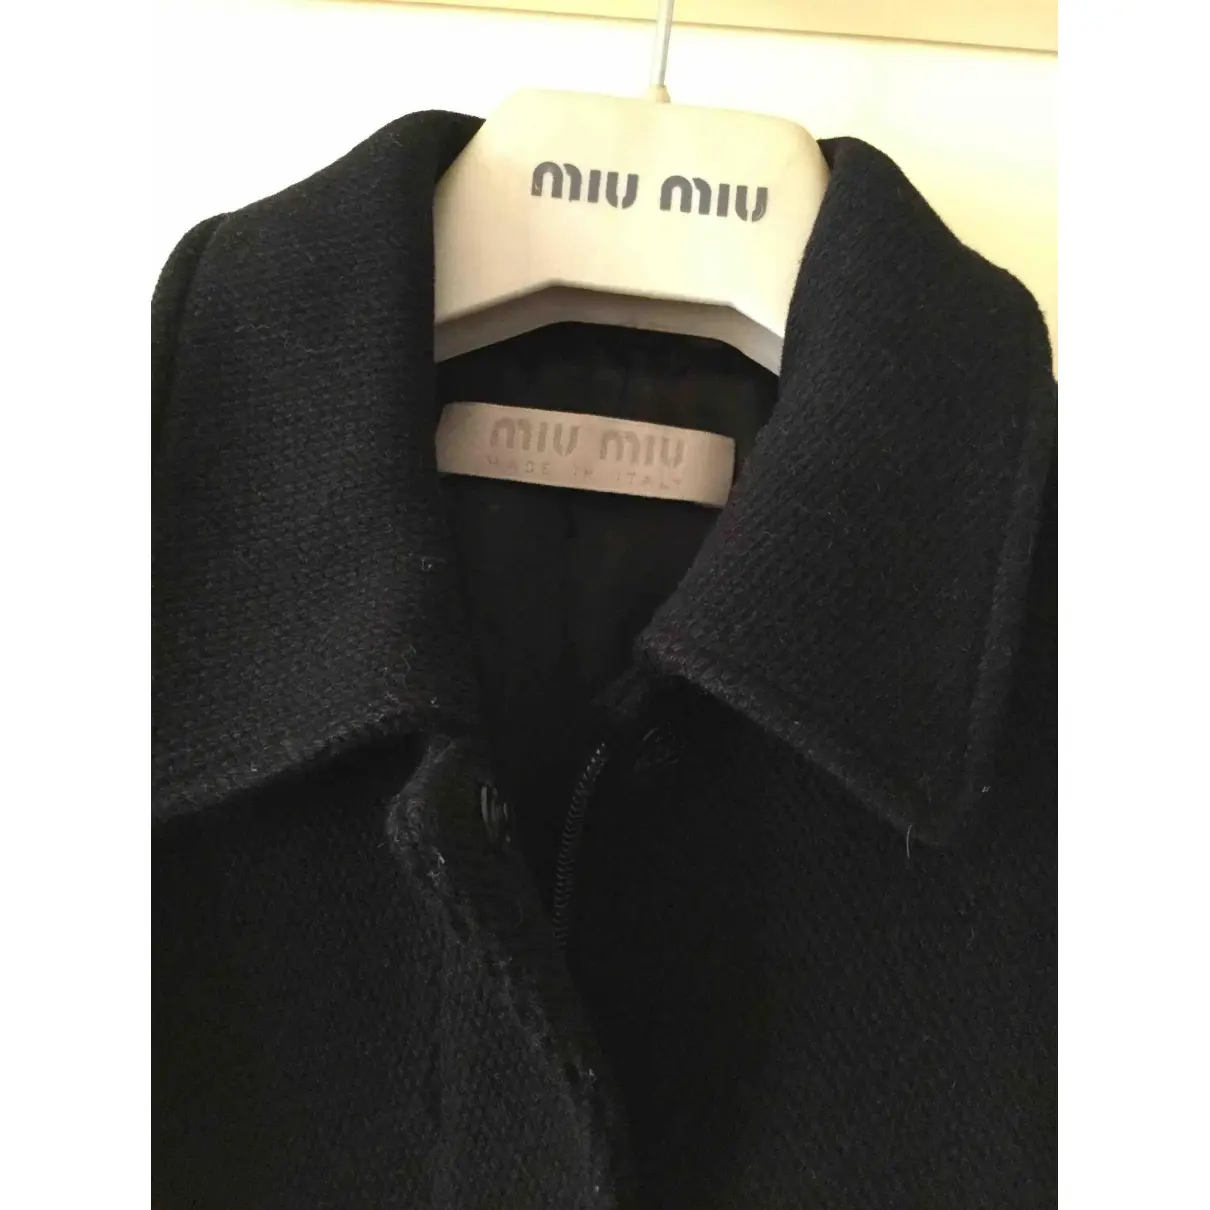 Buy Miu Miu Wool coat online - Vintage